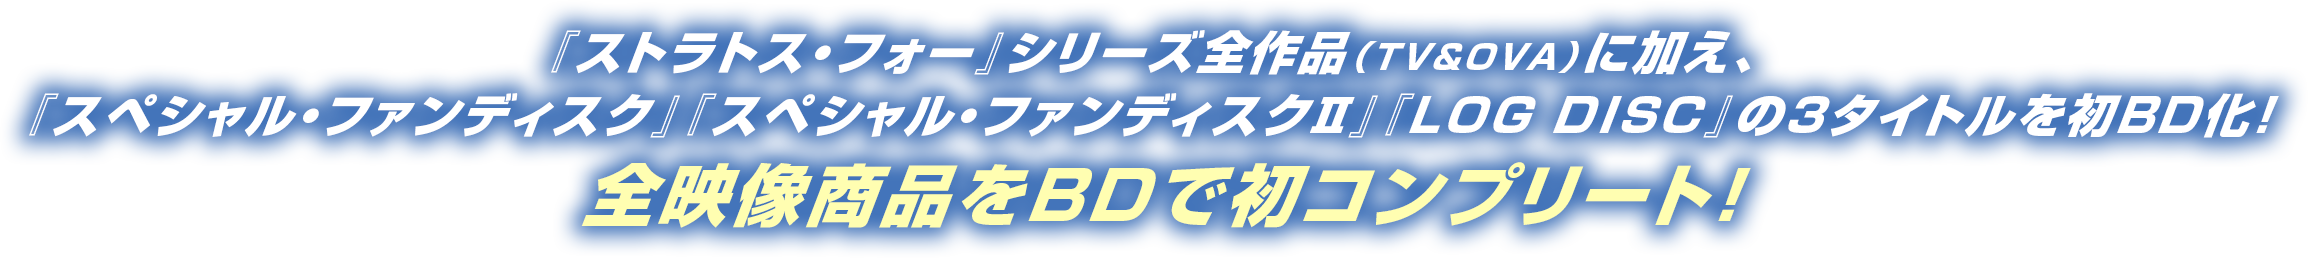 『ストラトス・フォー』シリーズ全作品(TV&OVA)に加え、『スペシャル・ファンディスク』『スペシャル・ファンディスクⅡ』『LOG DISC』の3タイトルを初BD化! 全映像商品をBDで初コンプリート!